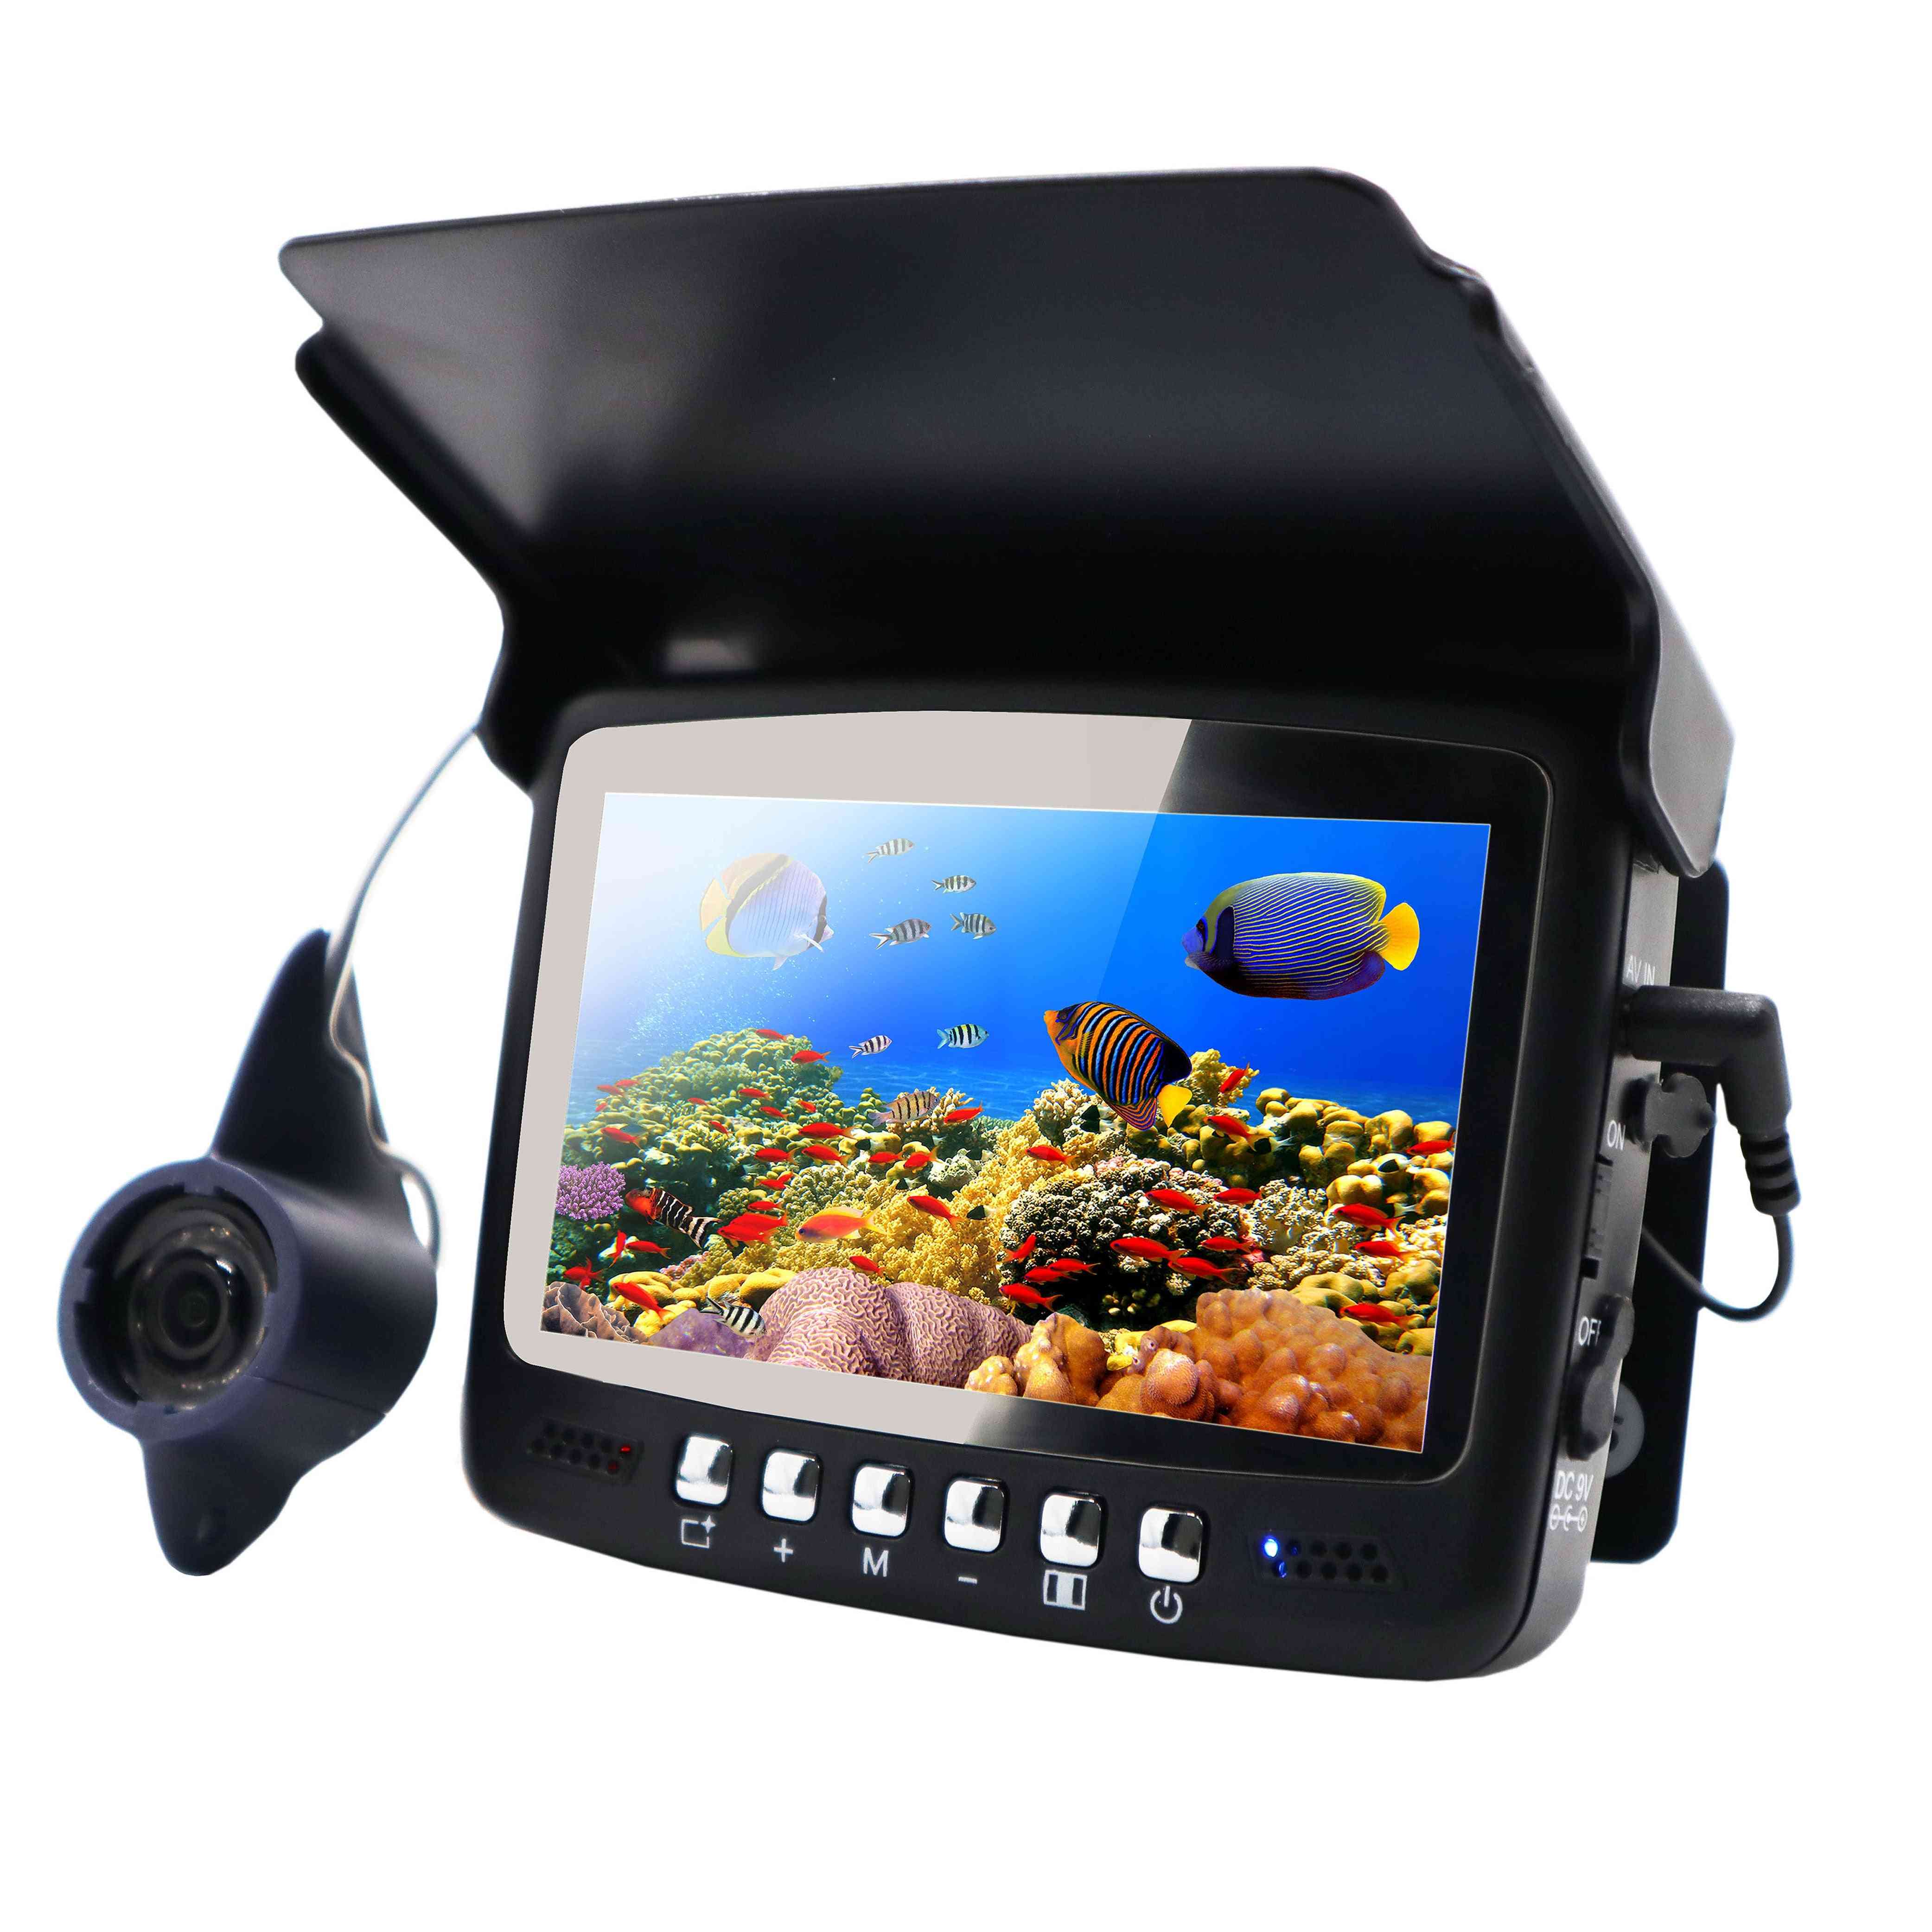 Synlig video fishfinder